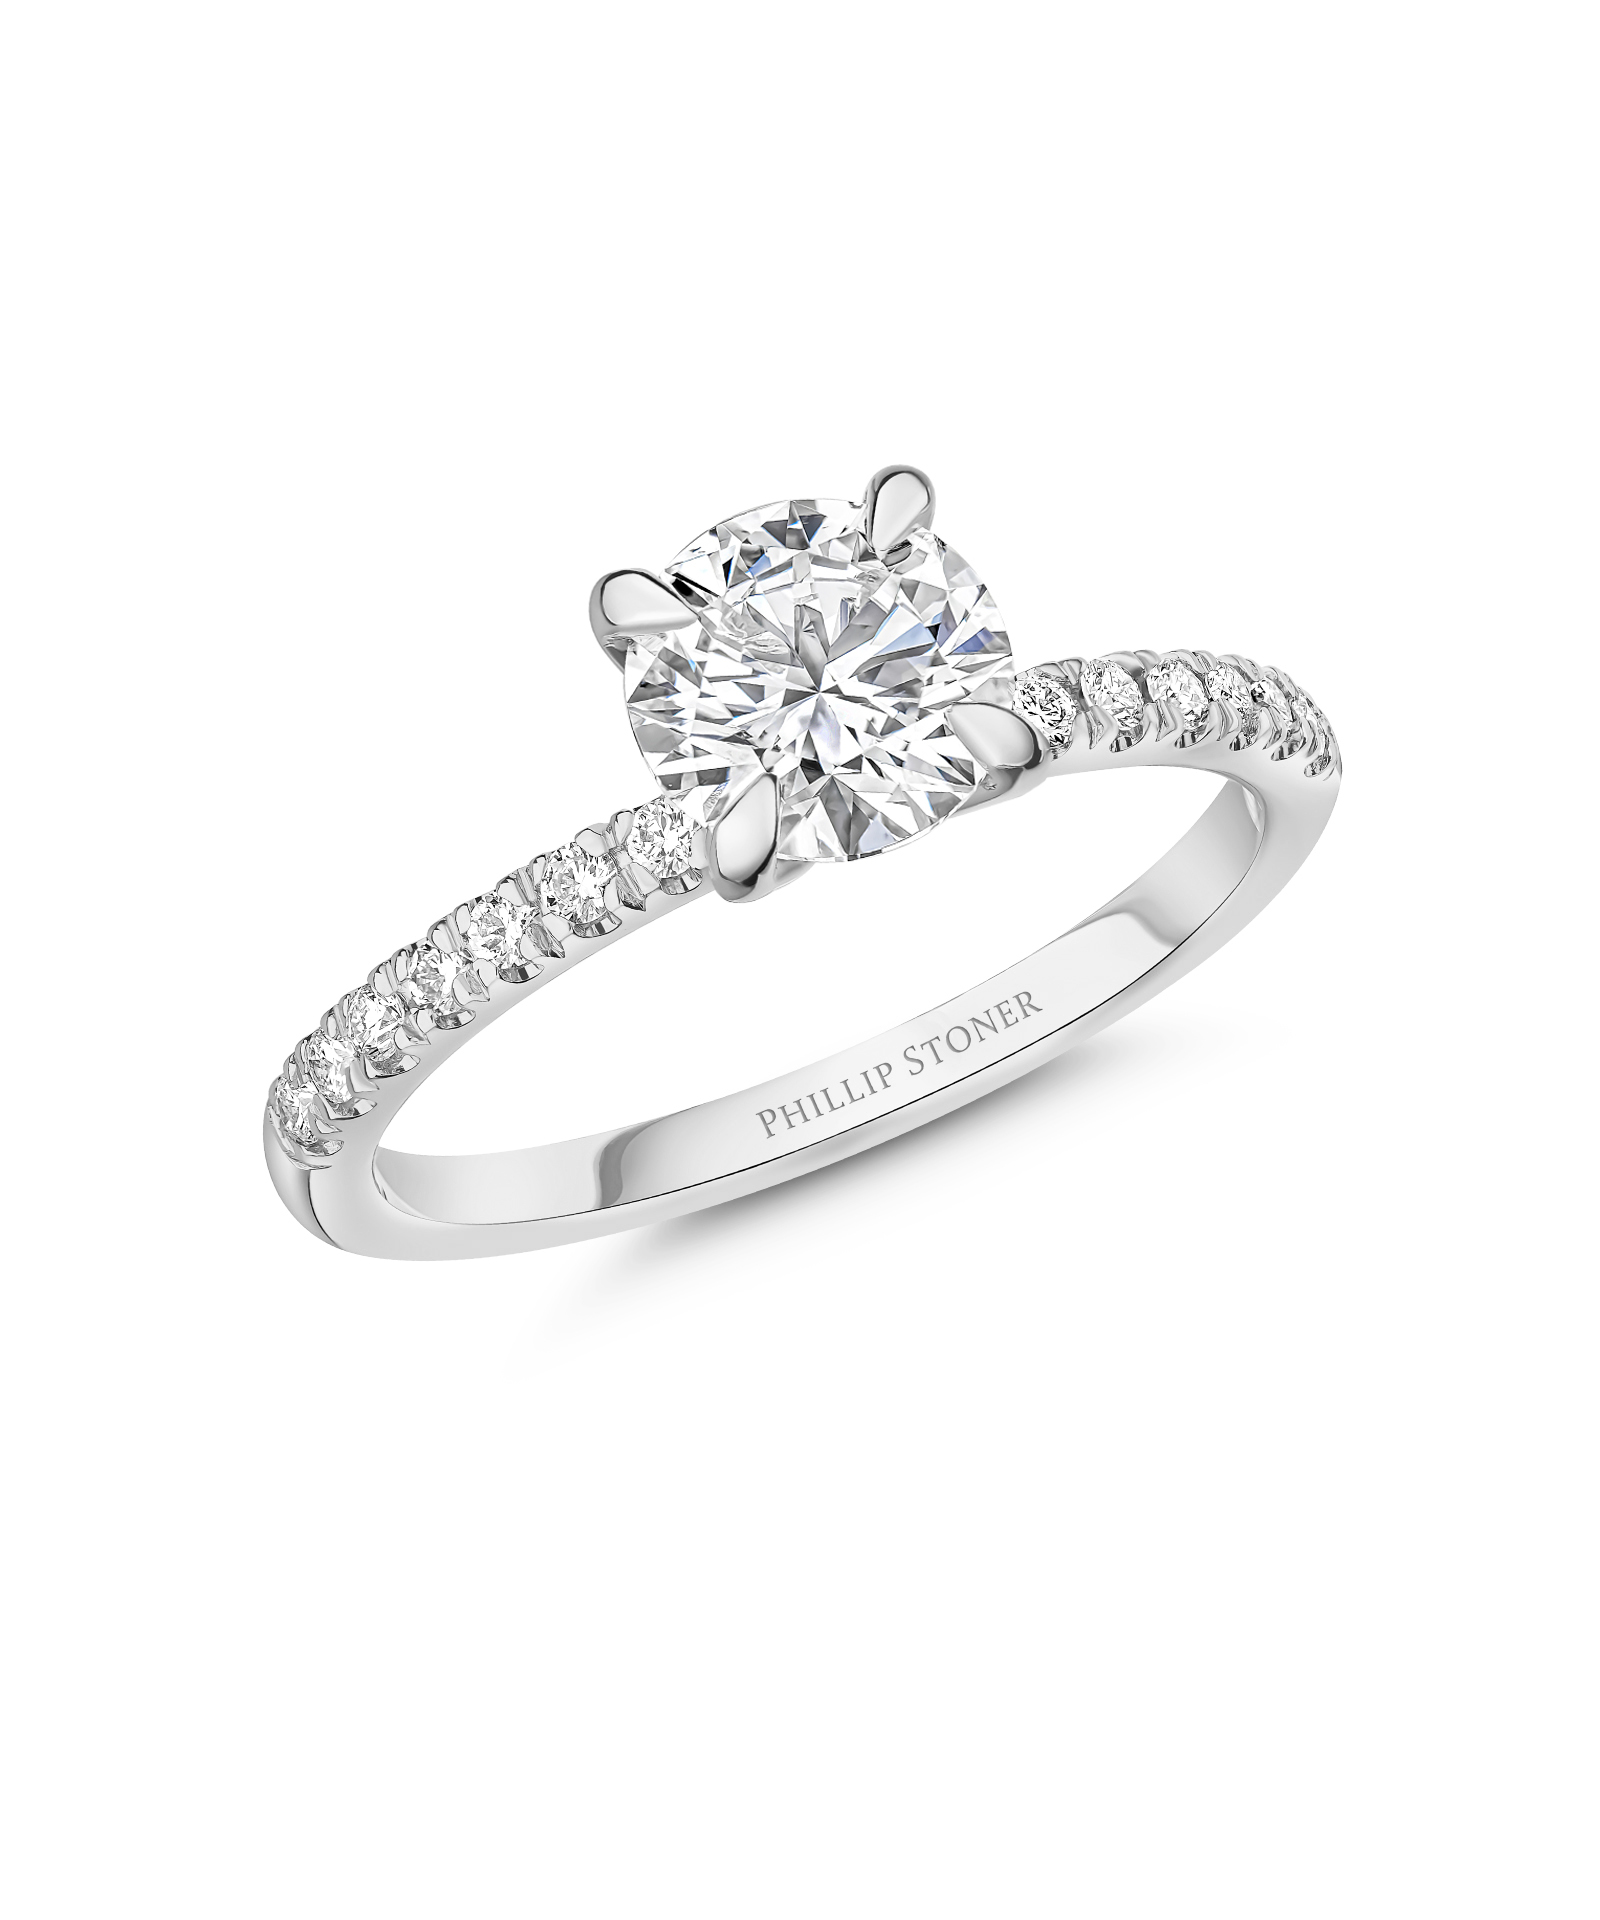 1.2ct Round Brilliant Cut Diamond Set Nova Platinum Engagement Ring - Phillip Stoner The Jeweller